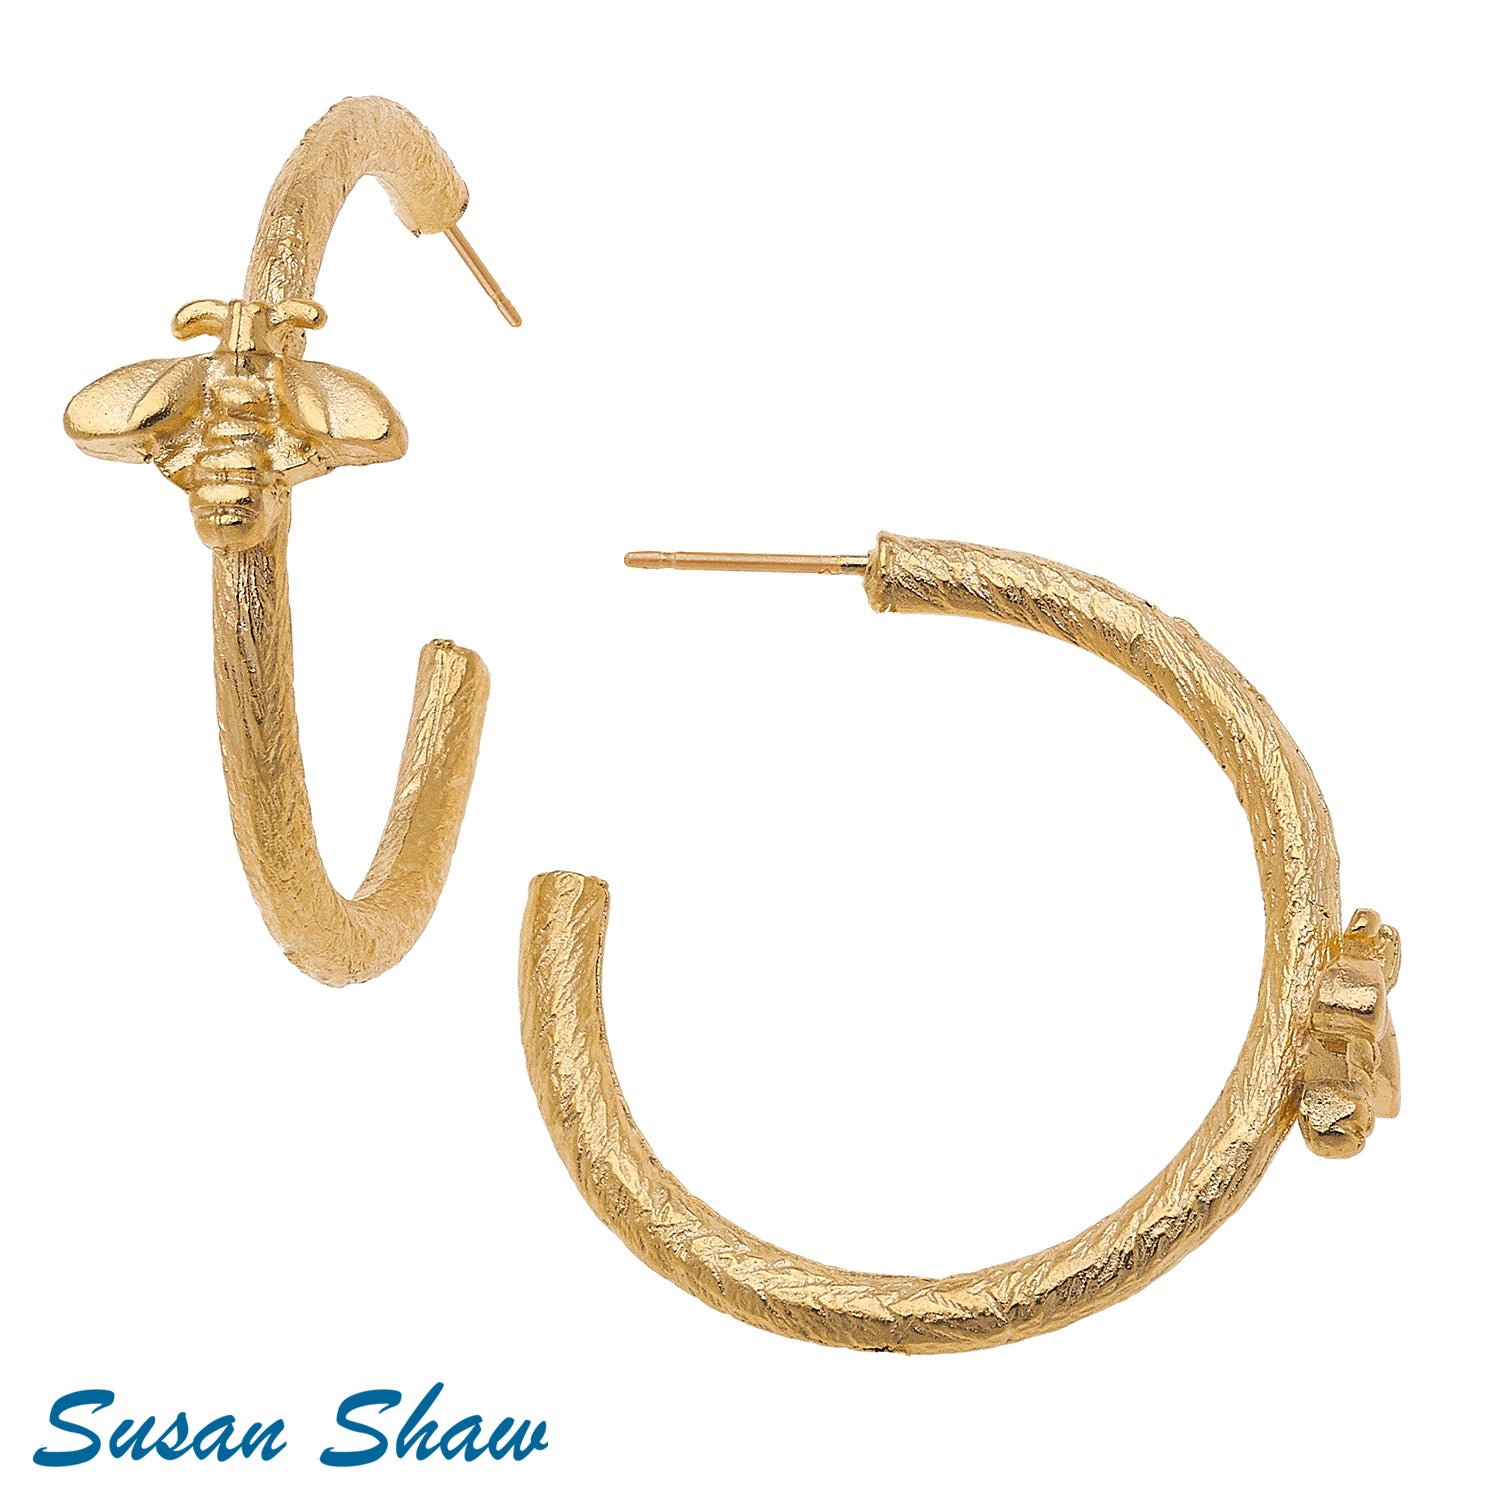 Susan Shaw Bee Hoop Earrings.